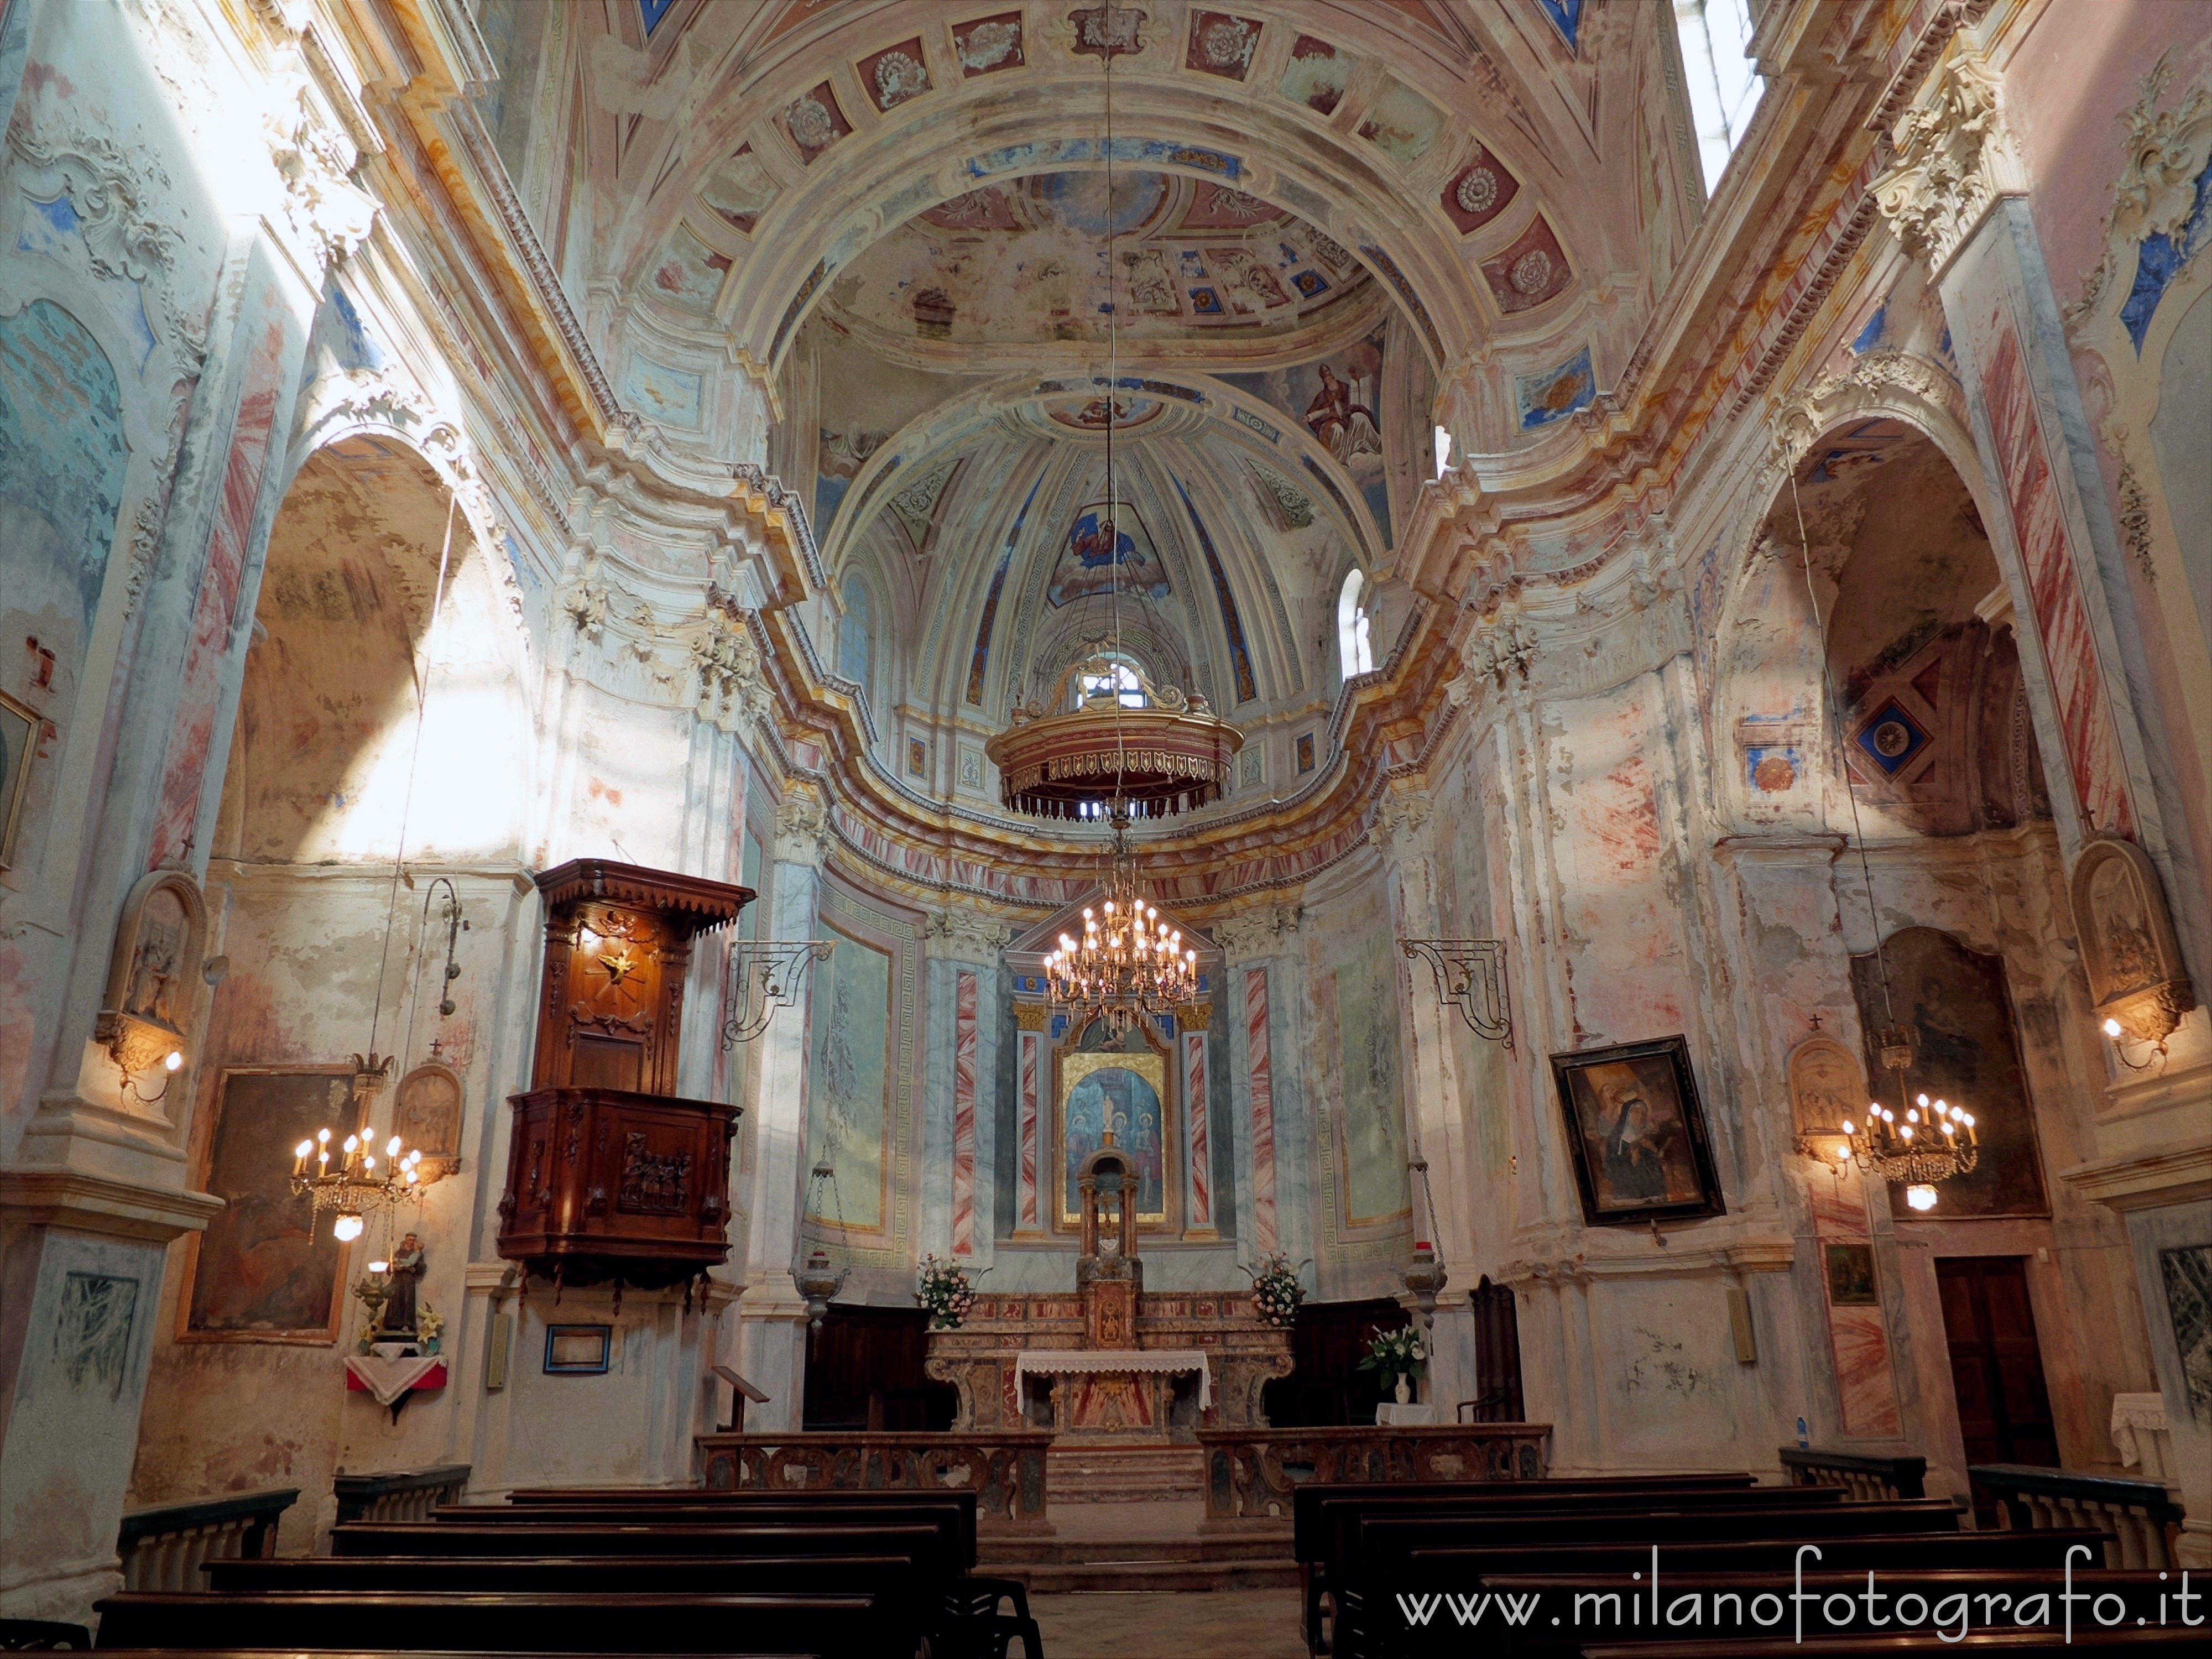 Mottalciata (Biella, Italy): Interior of the Church of San Vincenzo - Mottalciata (Biella, Italy)